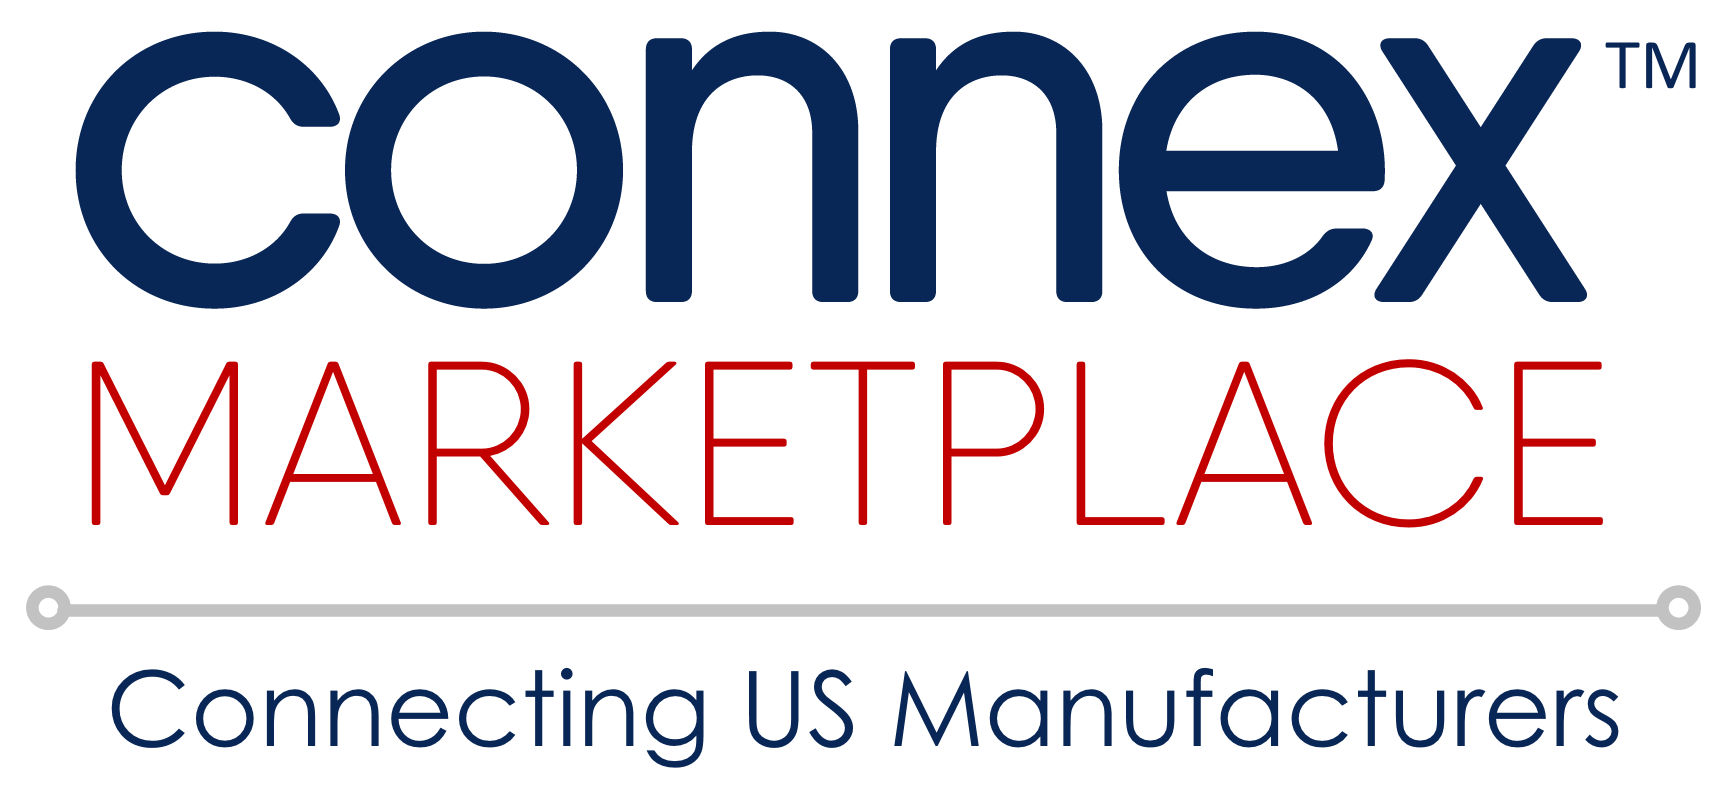 CONNEX-Mktplace-Logo-Final-Transparent-Color